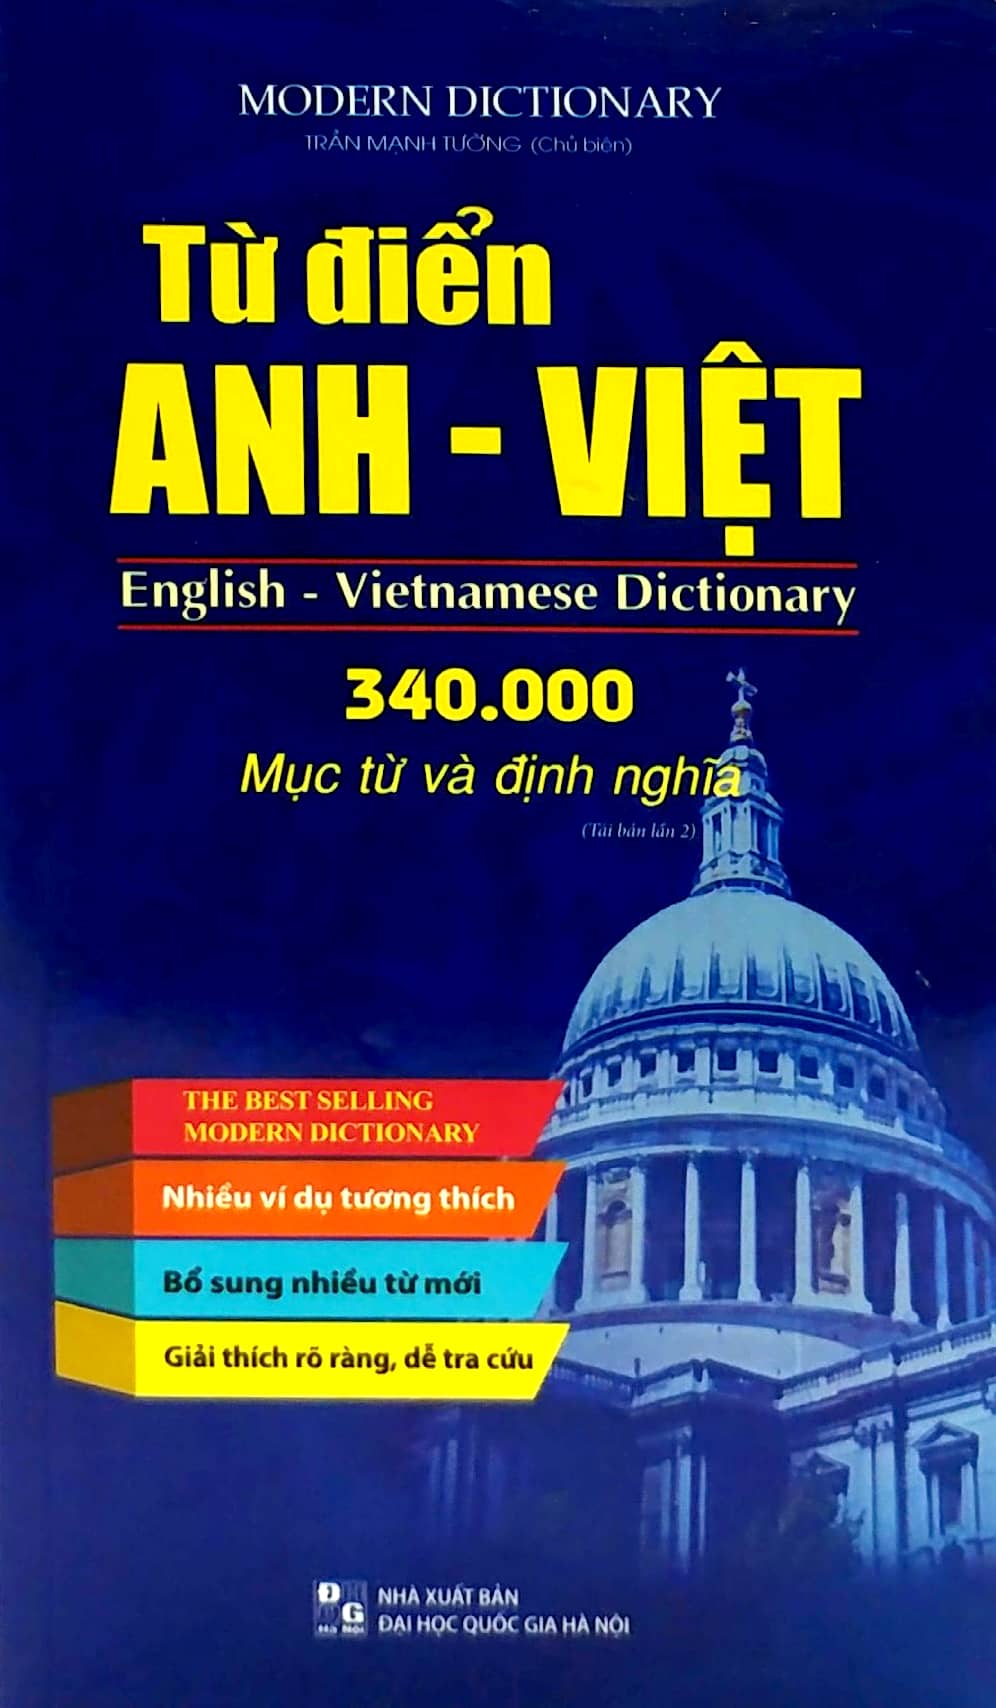 Từ Điển Anh - Việt 340.000 Mục Từ Và Định Nghĩa PDF